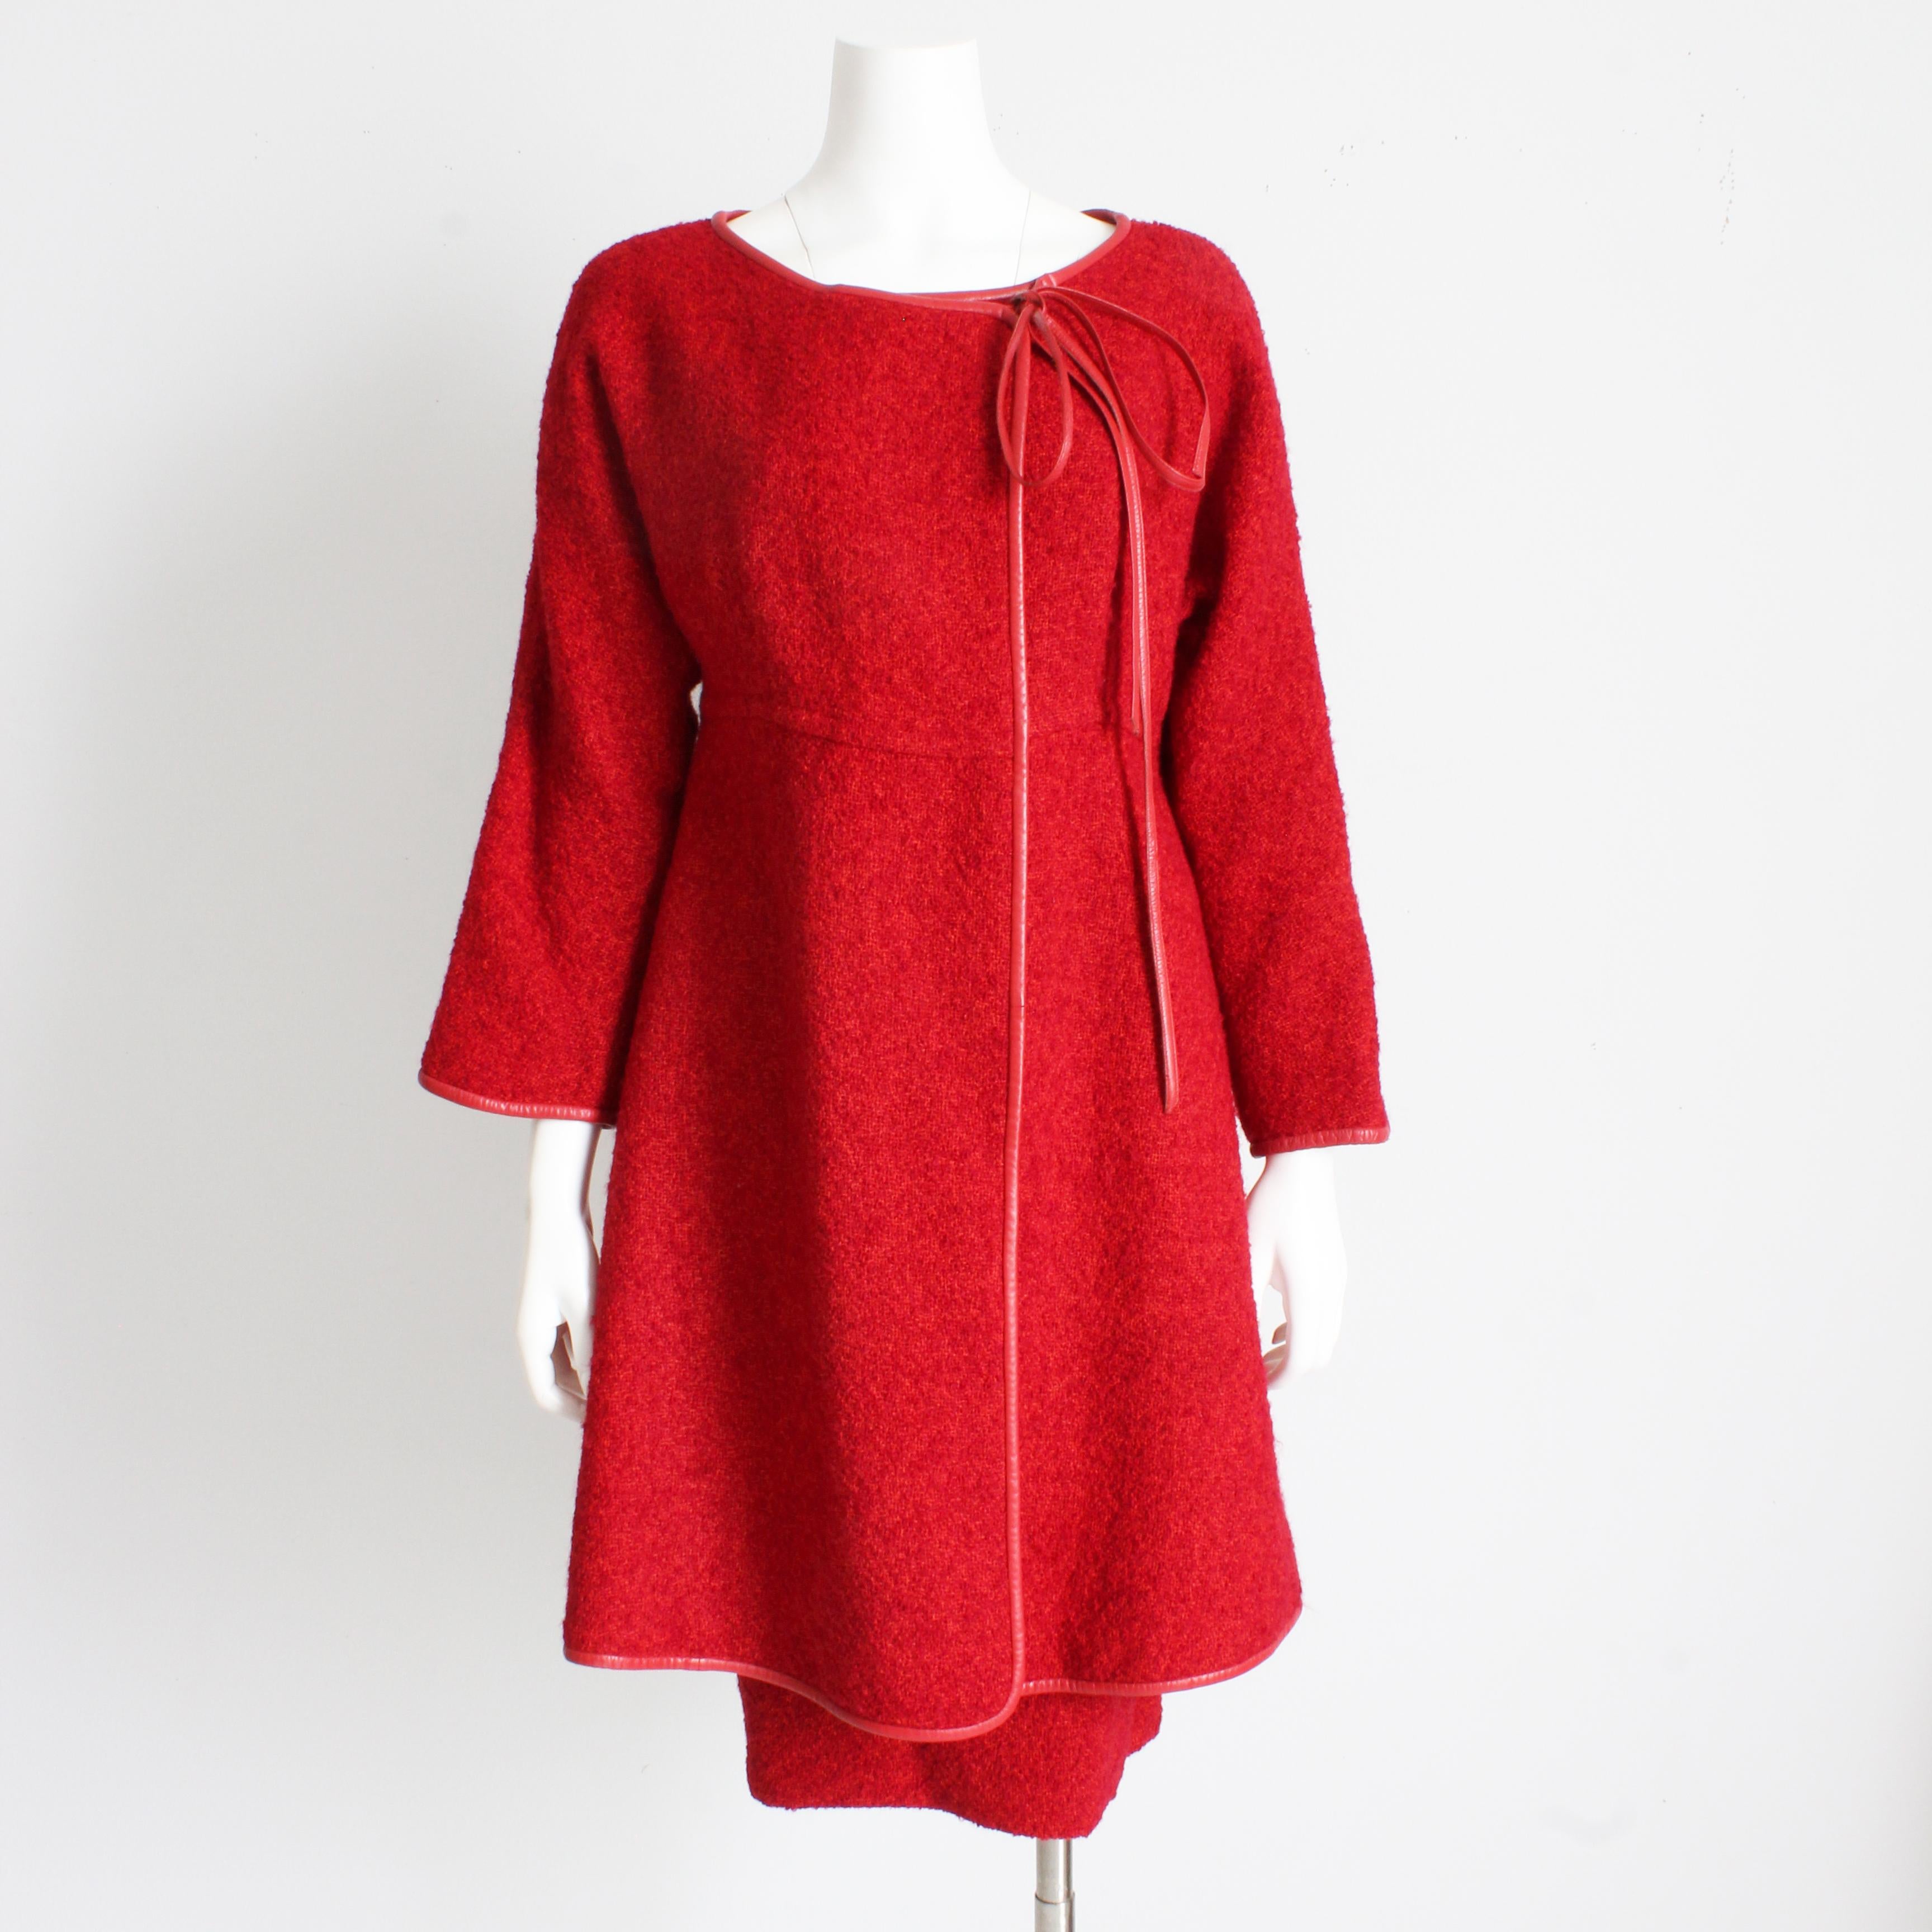 Ensemble veste et jupe Bonnie Cashin for Sills authentique, vintage, d'occasion, circa 1960. Réalisée dans une maille de laine bouclée rouge cerise, rose et orange absolument fabuleuse, la veste est garnie de cuir rouge cerise.

Un magnifique